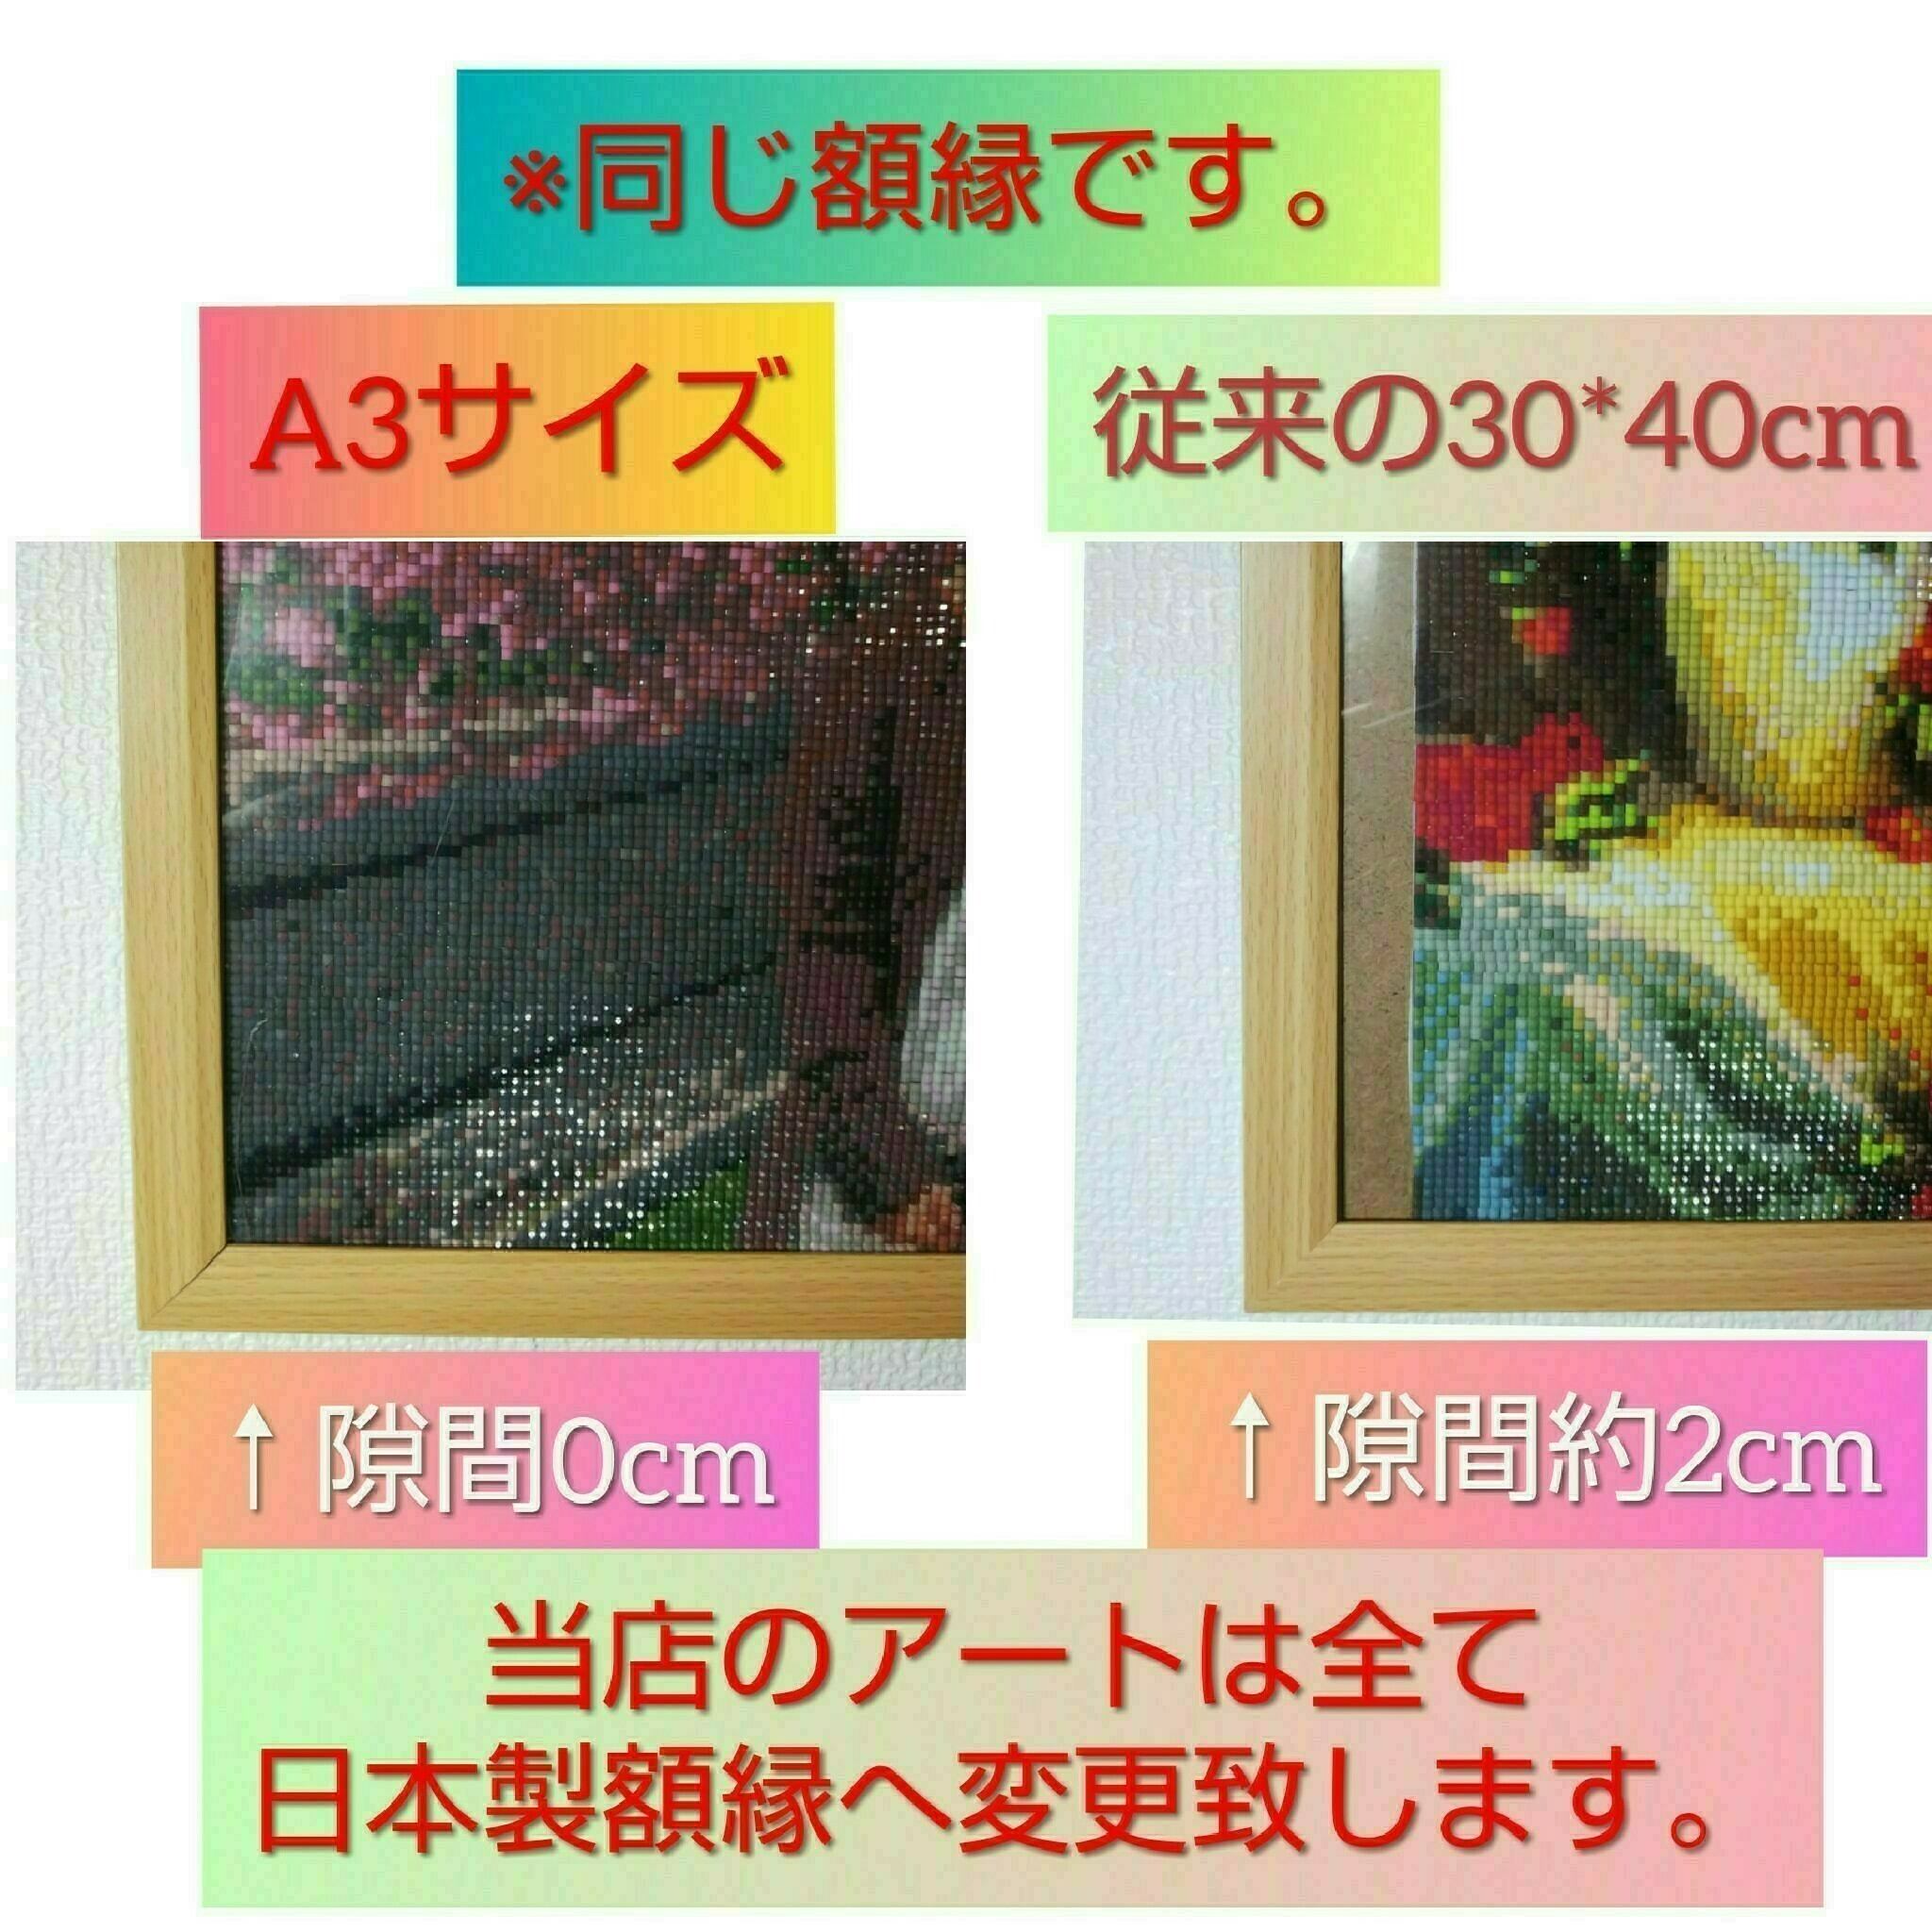 B2サイズ 丸型ビーズ【fan-008】フルダイヤモンドアート